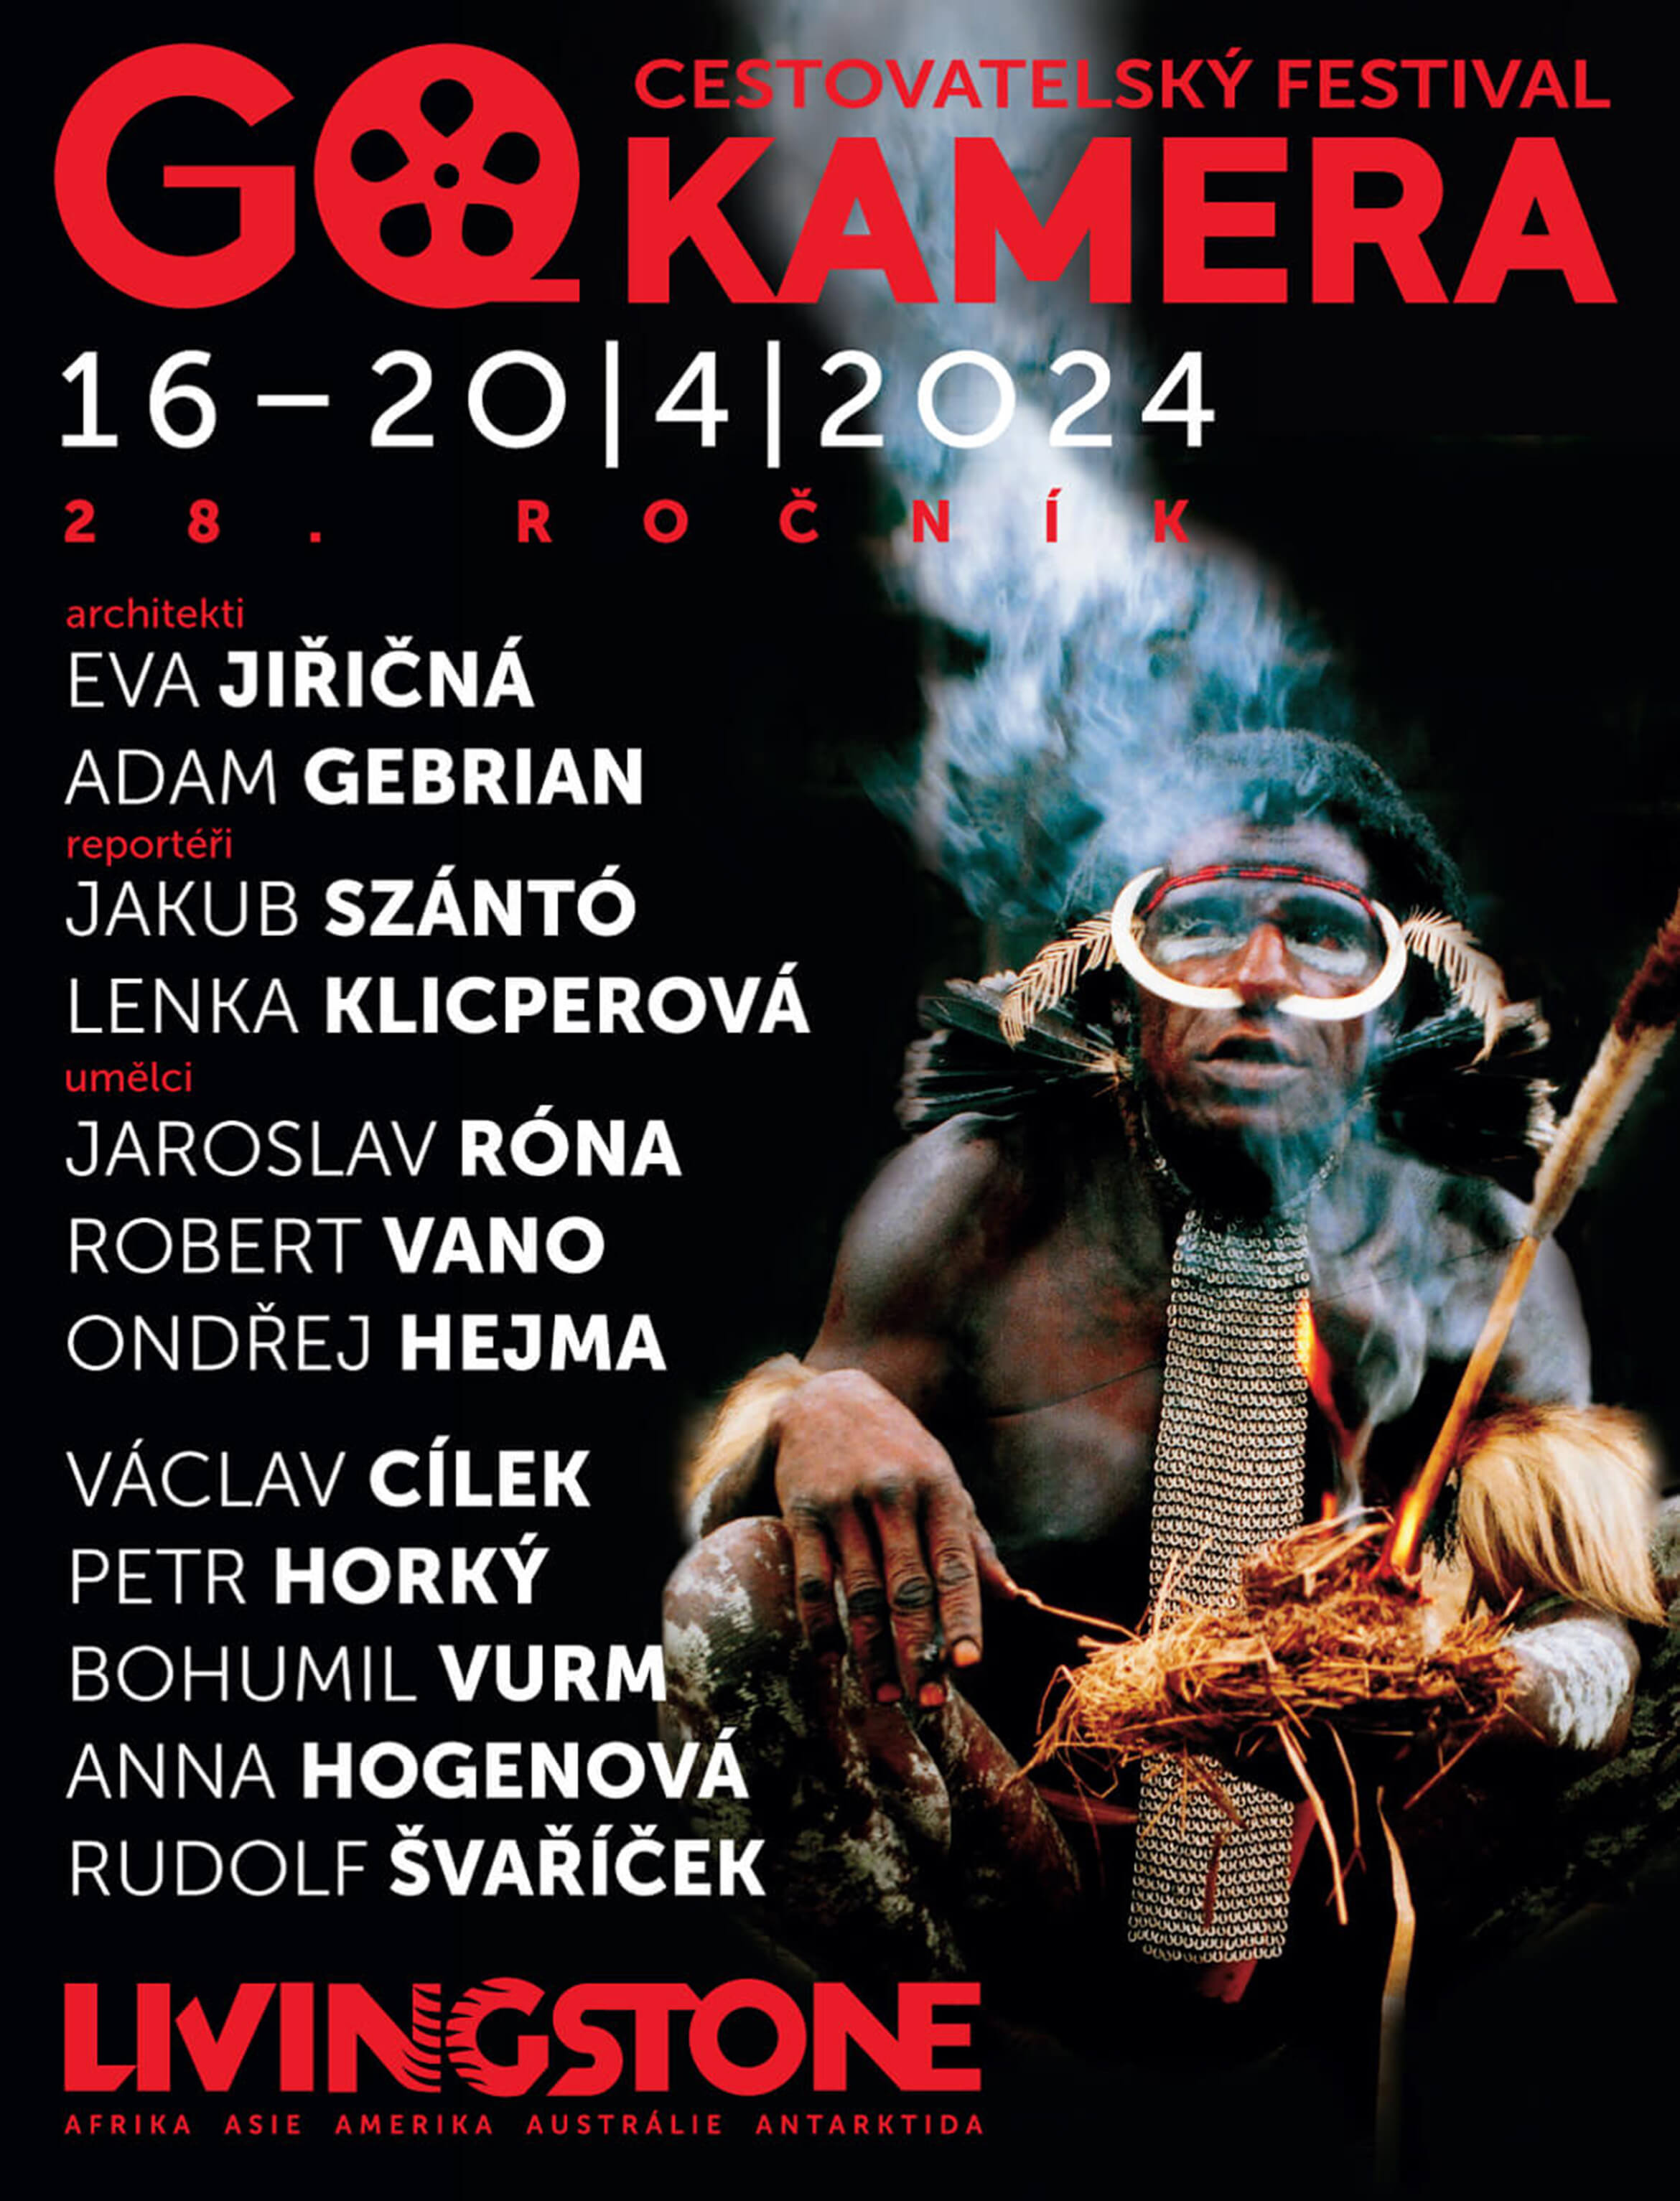 Go Kamera, cestovatelský festival, banner, magazín KULTINO*Brno